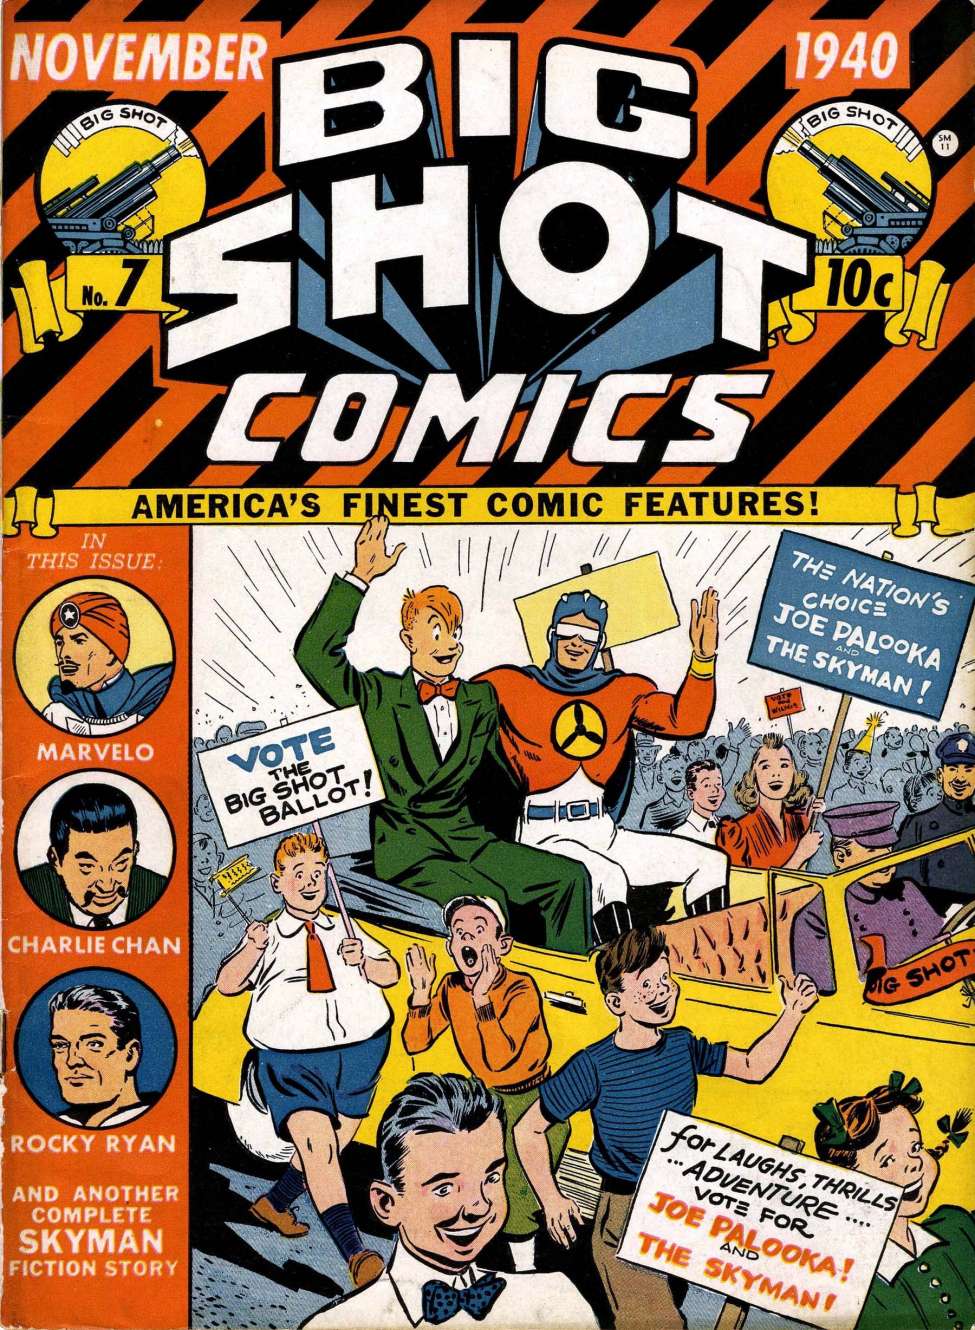 Comic Book Cover For Big Shot 7 (4 fiche) - Version 2